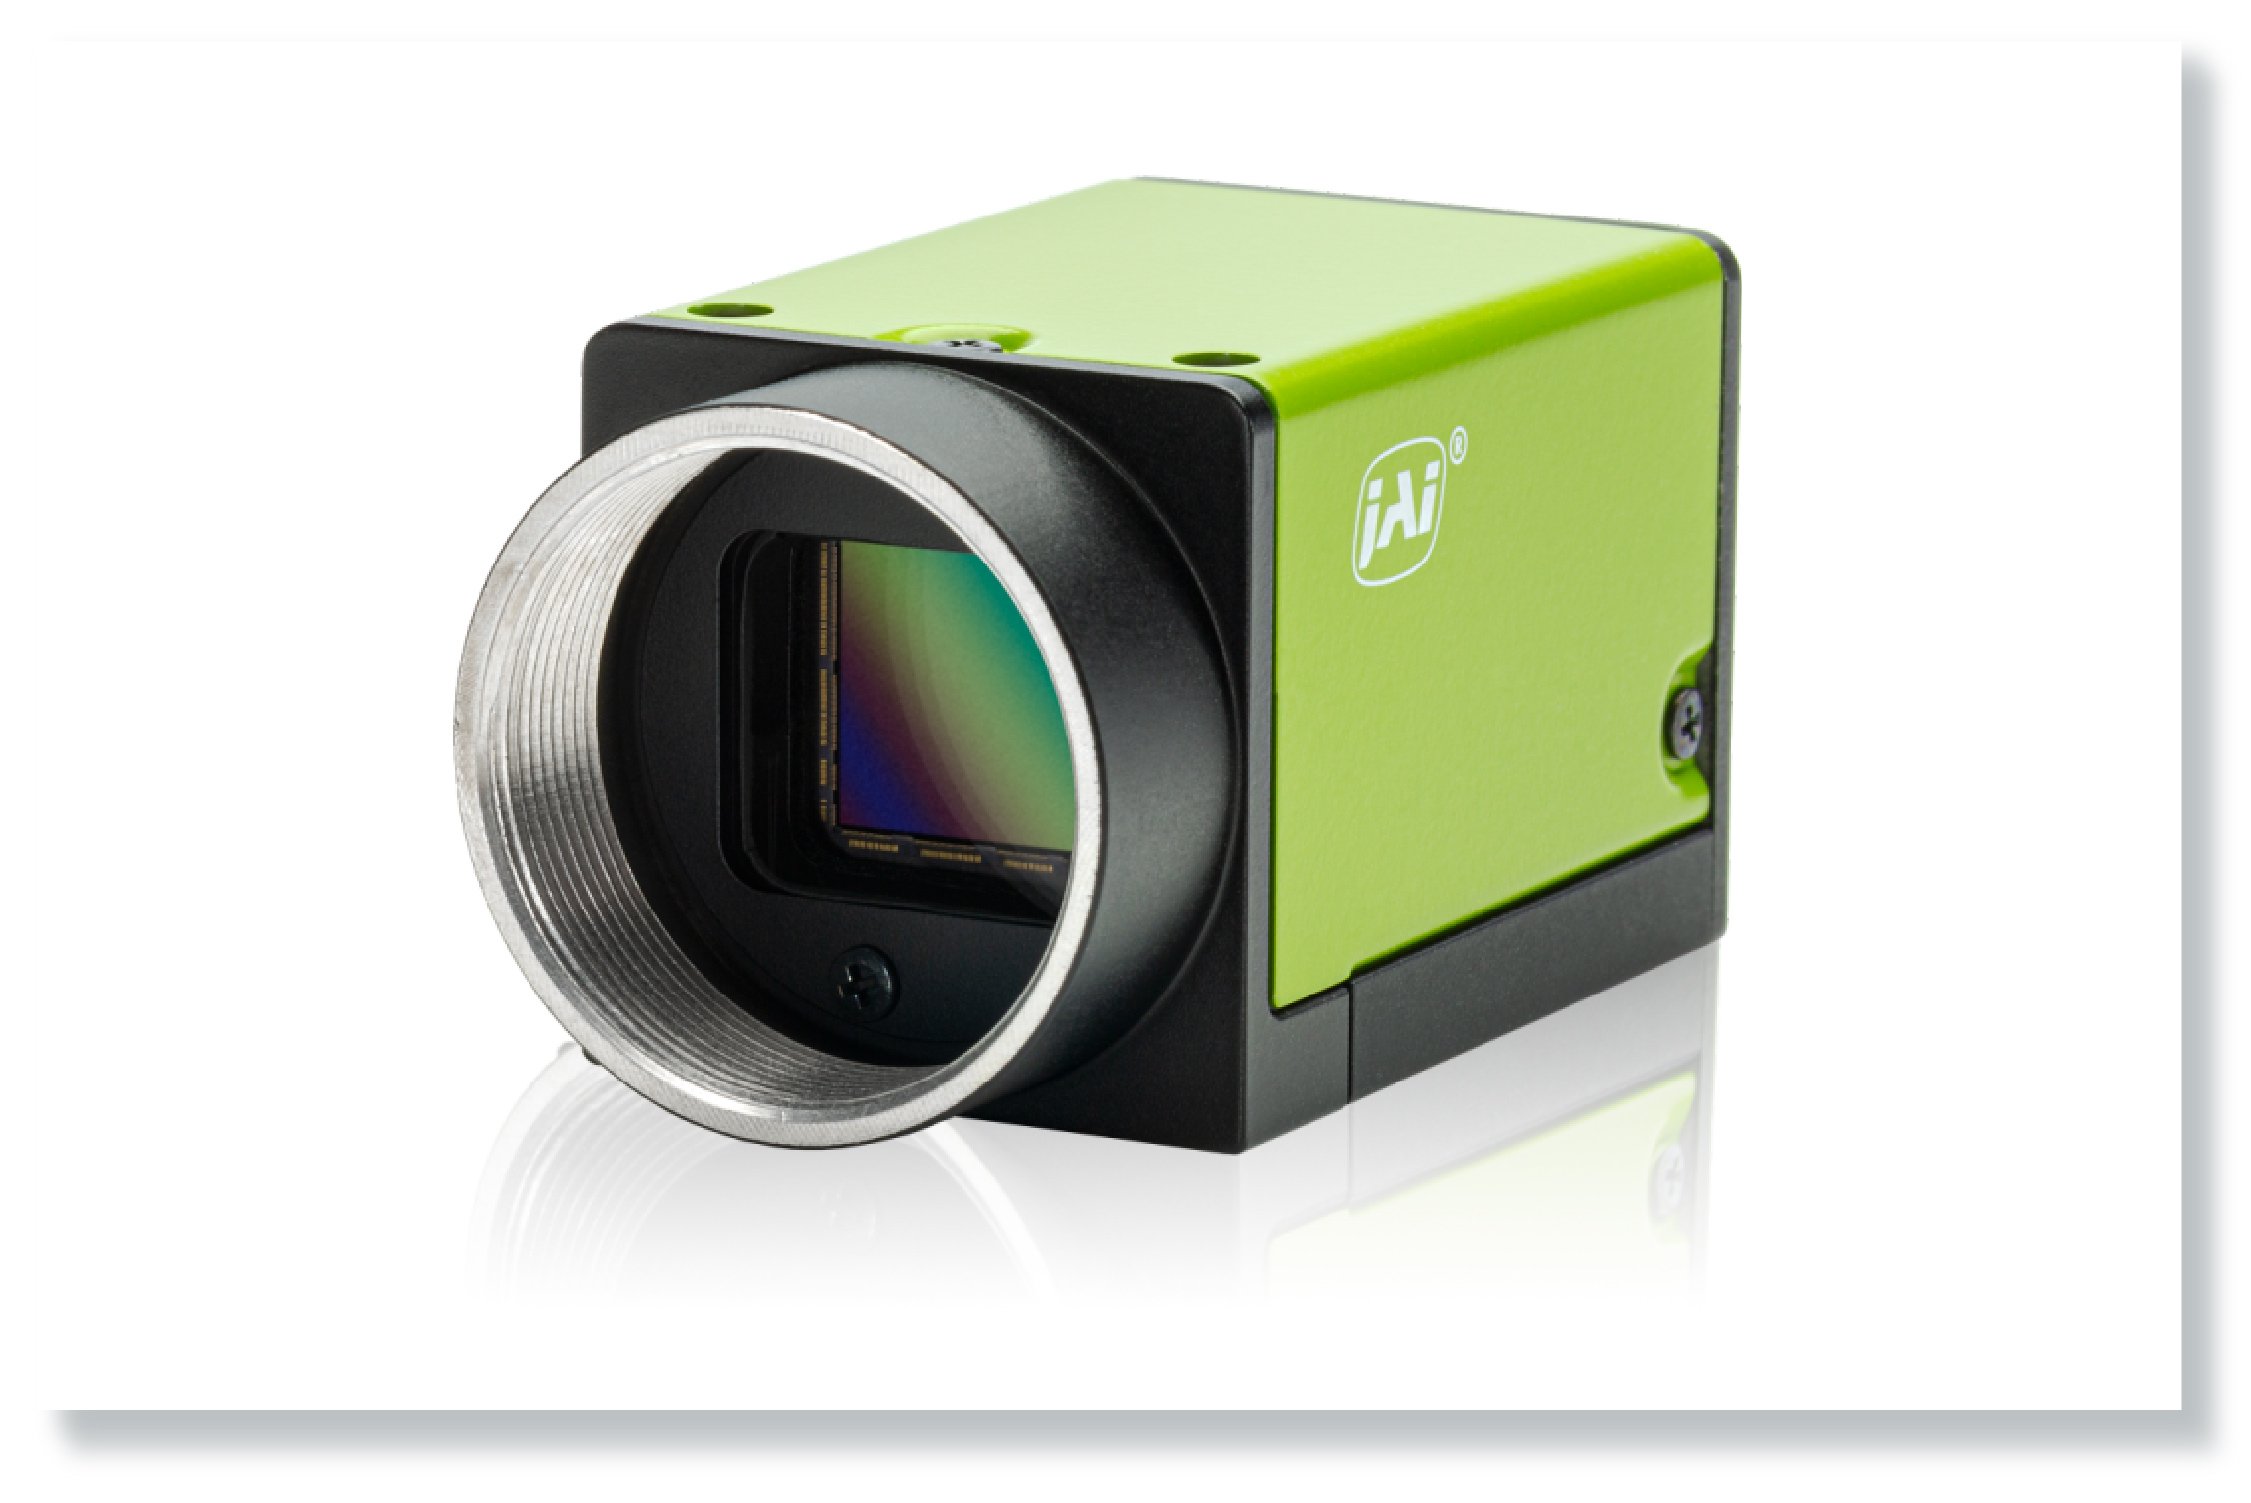 비전 시스템을 위한 JAI 카메라의 엑스스케일 카메라